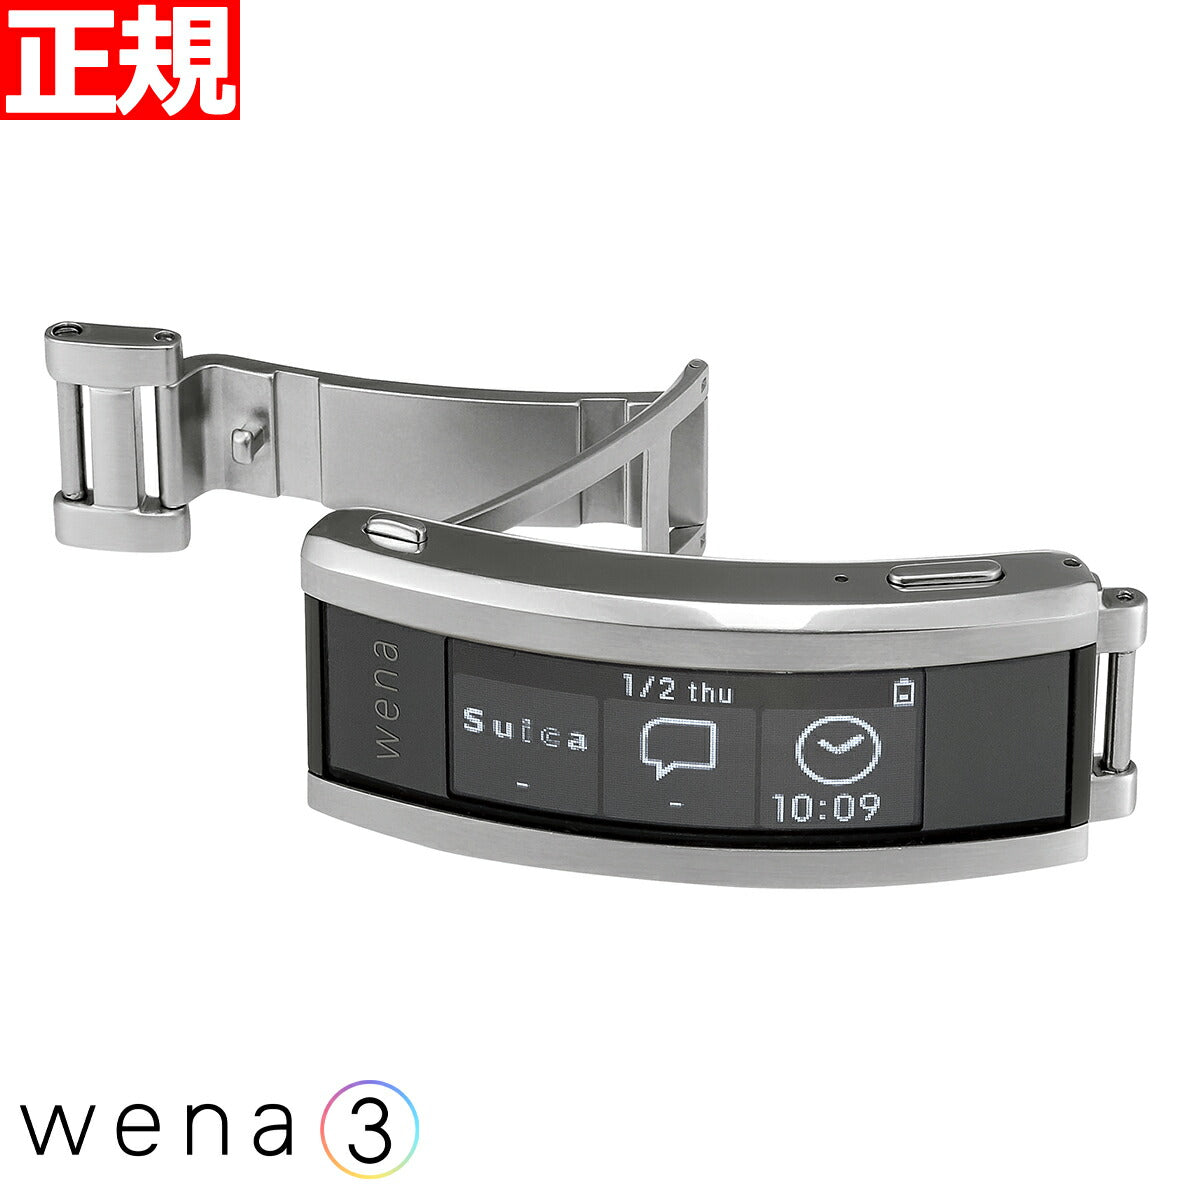 wena3 SONY ロレックス ROLEX スポーツモデル互換性モデル スマート